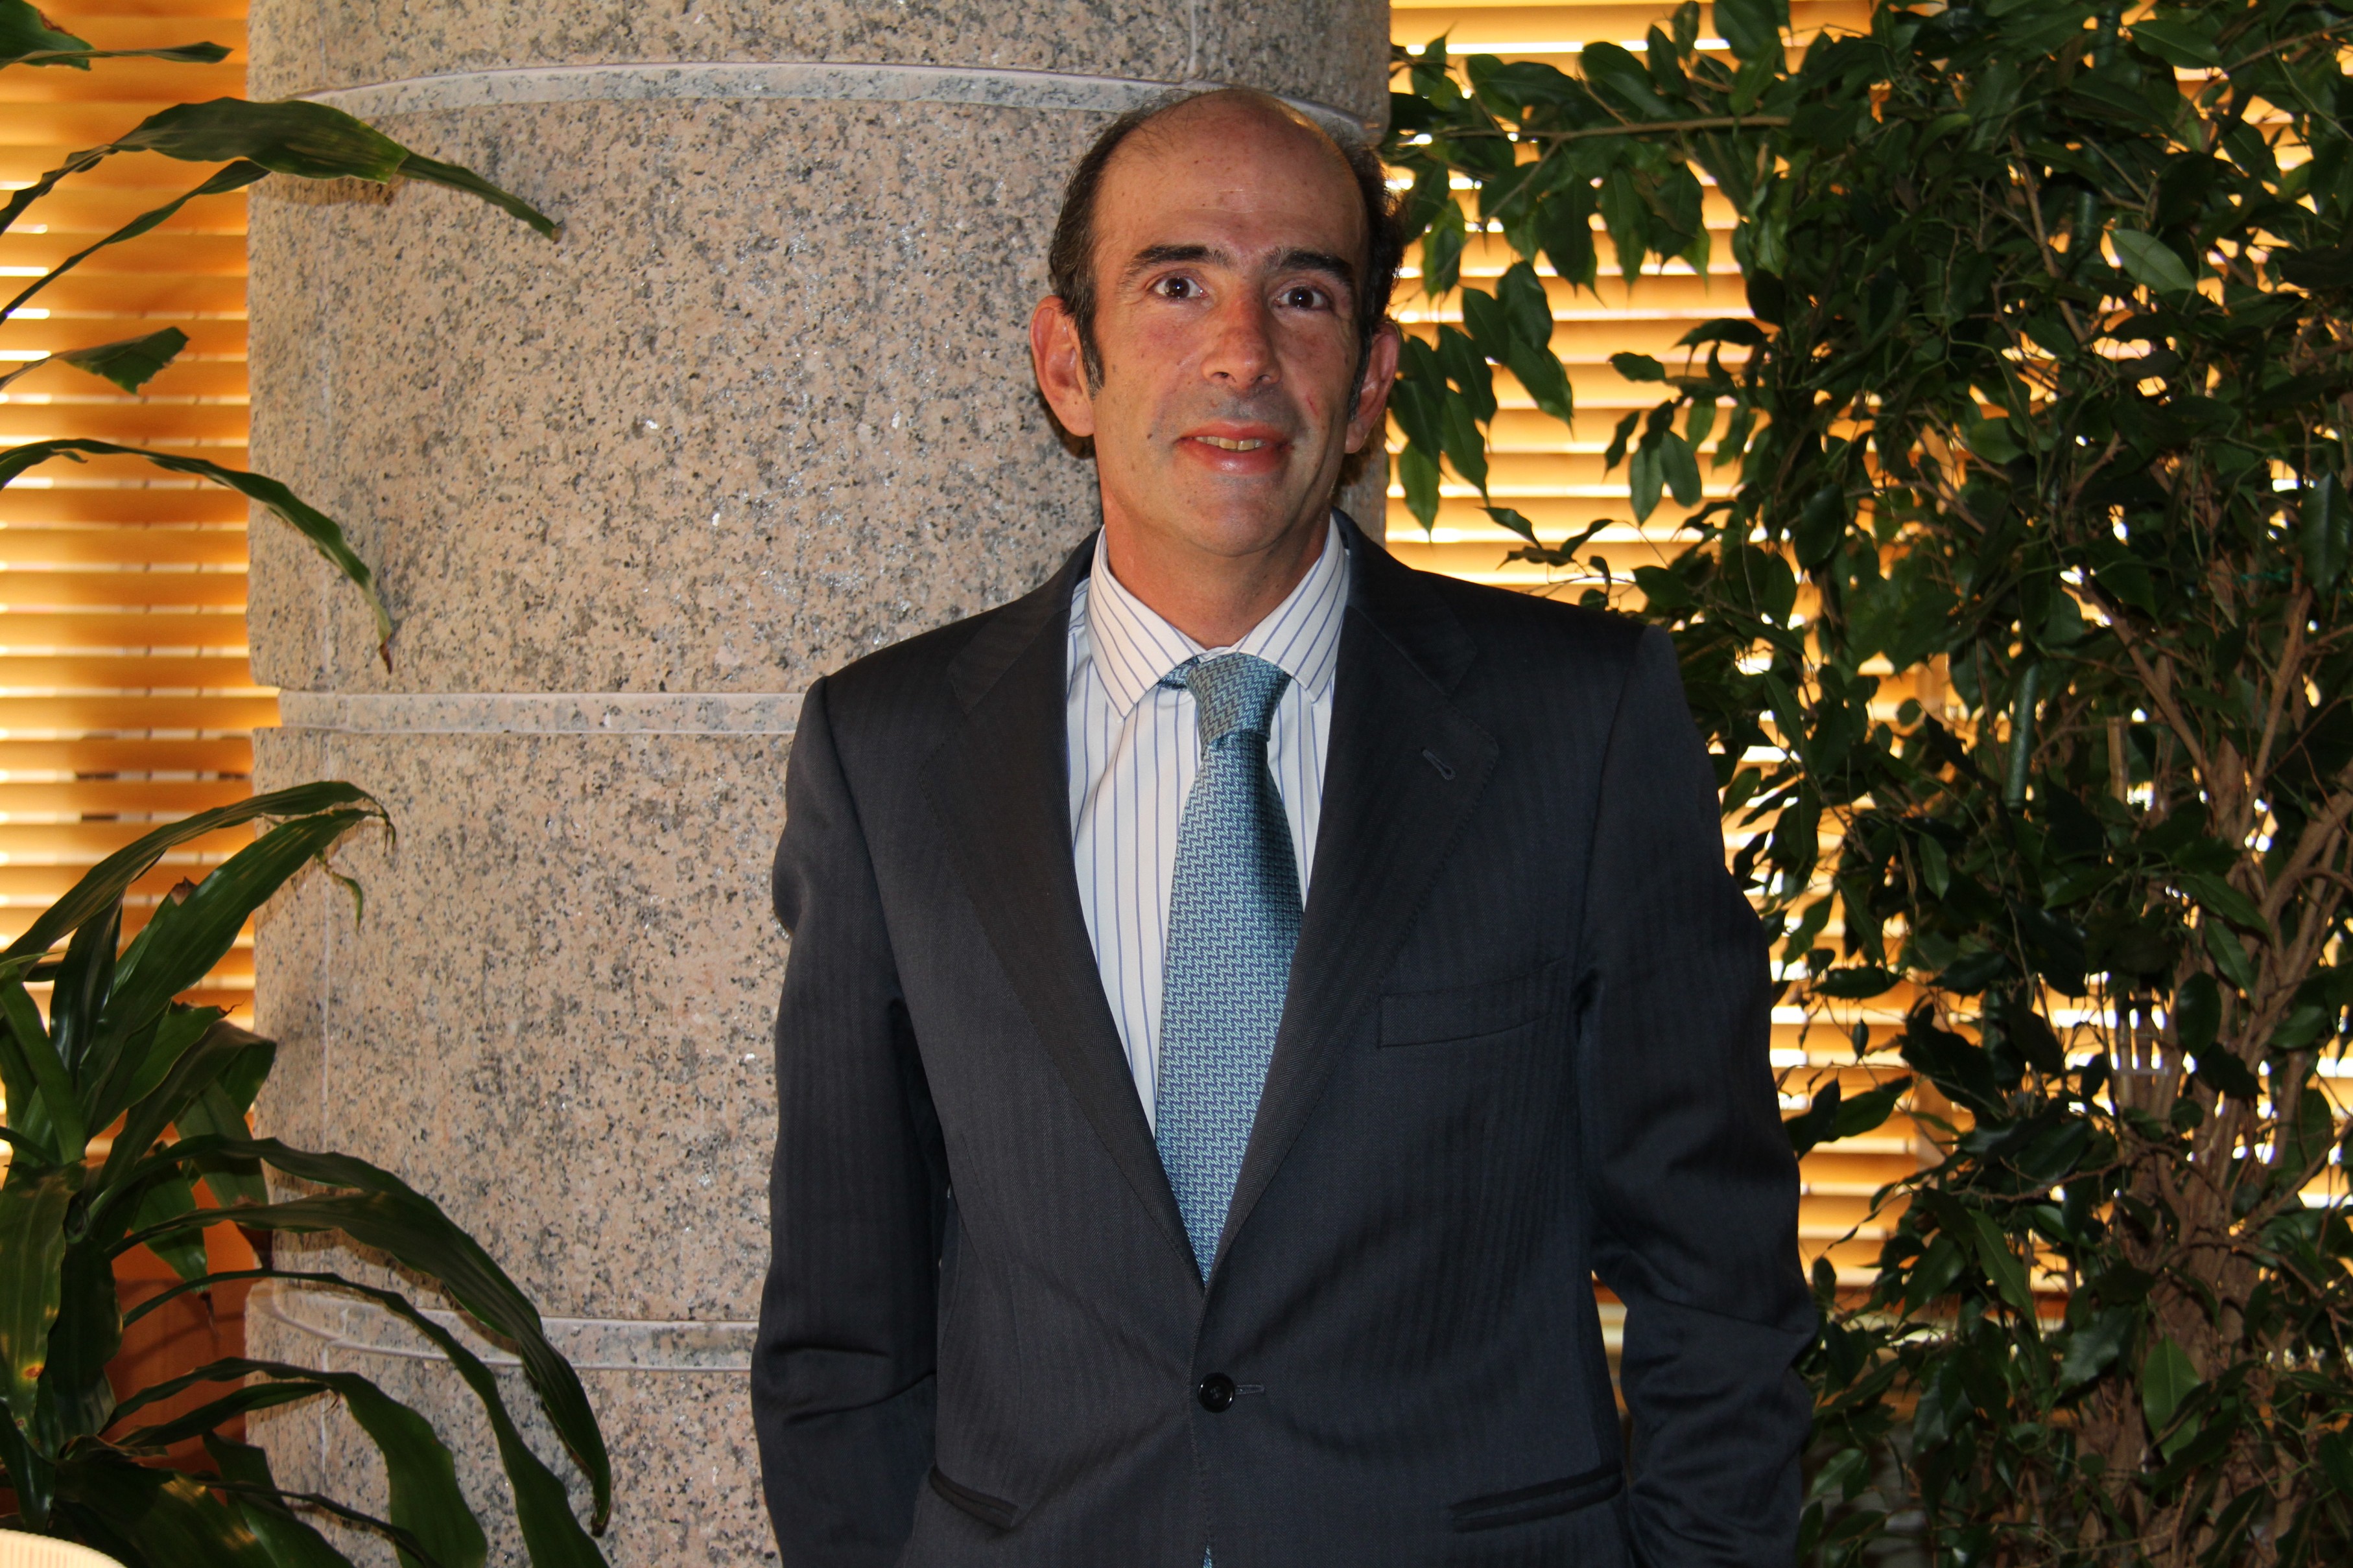 Marcelino Oreja, former Enagás CEO